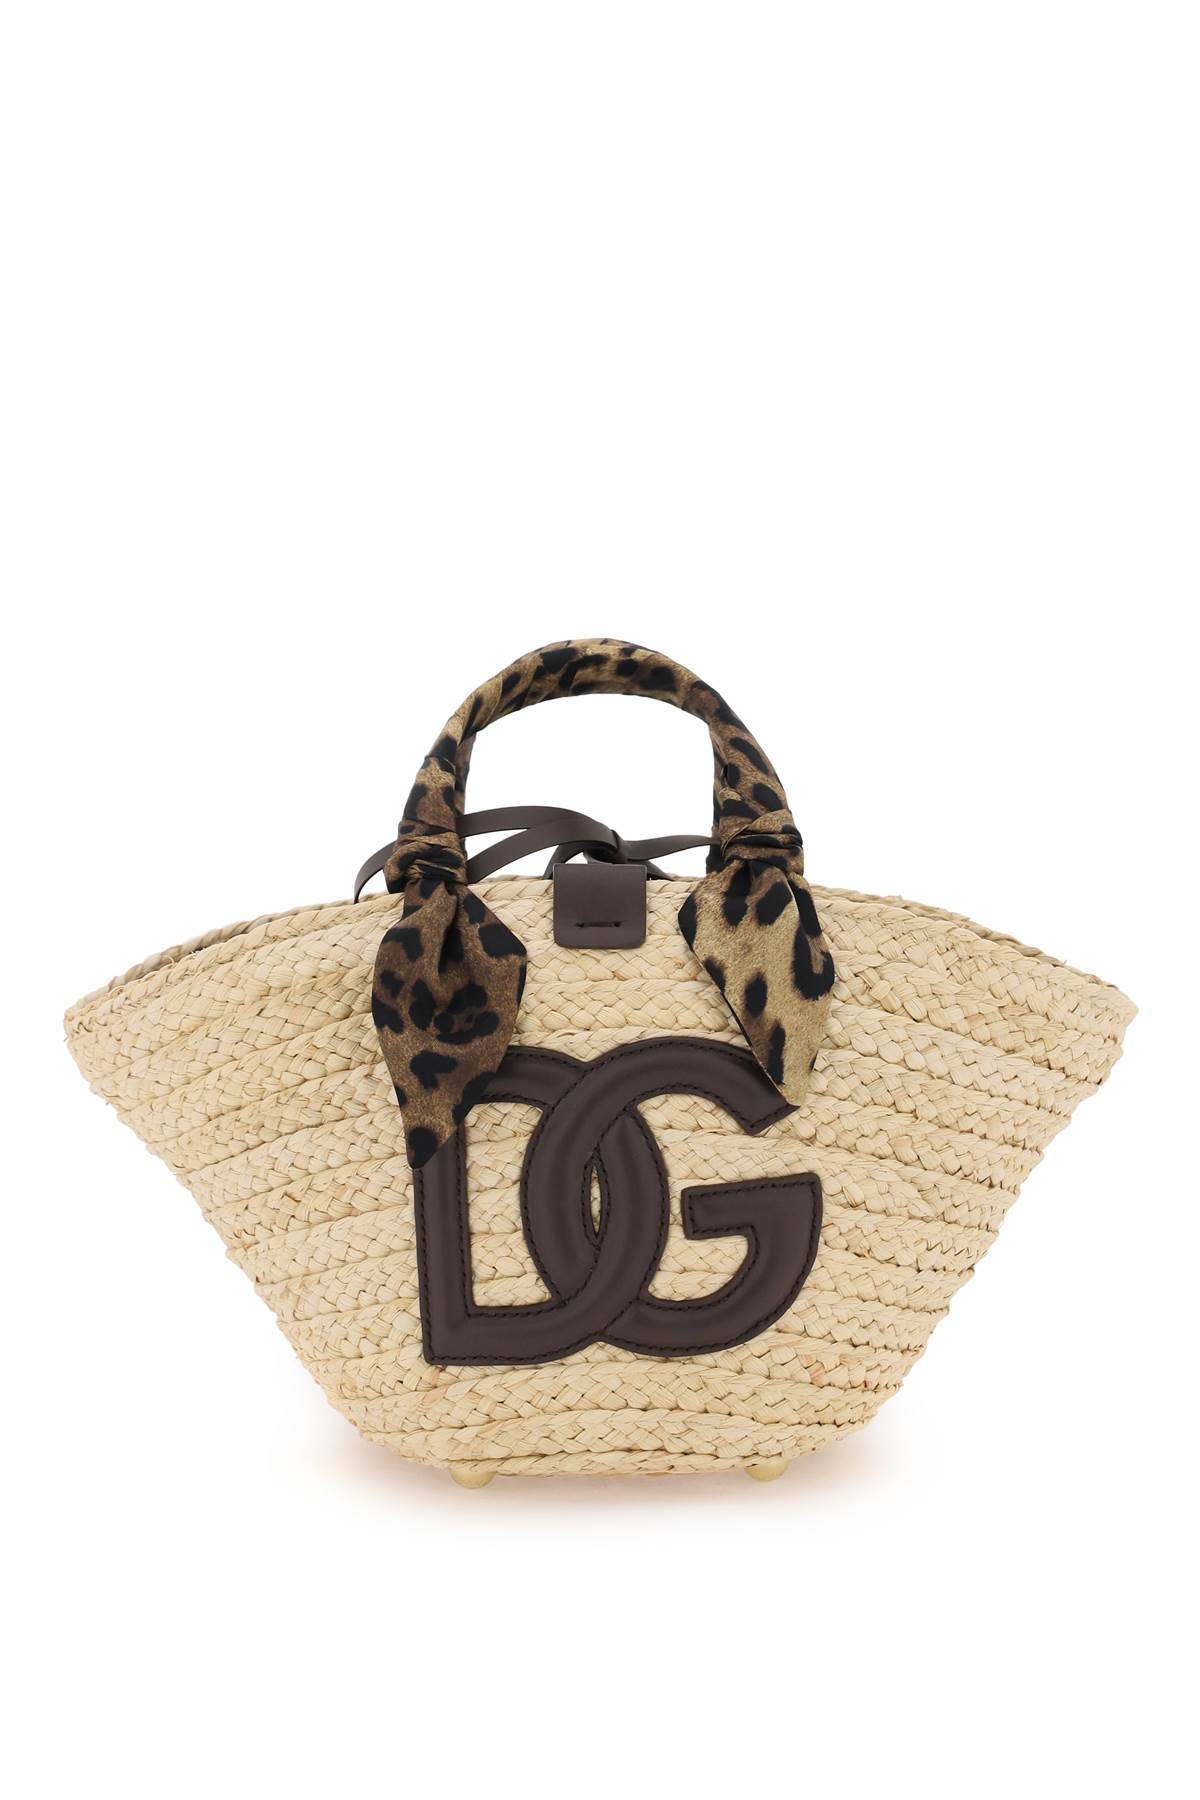 Dolce & Gabbana DOLCE & GABBANA kendra handbag